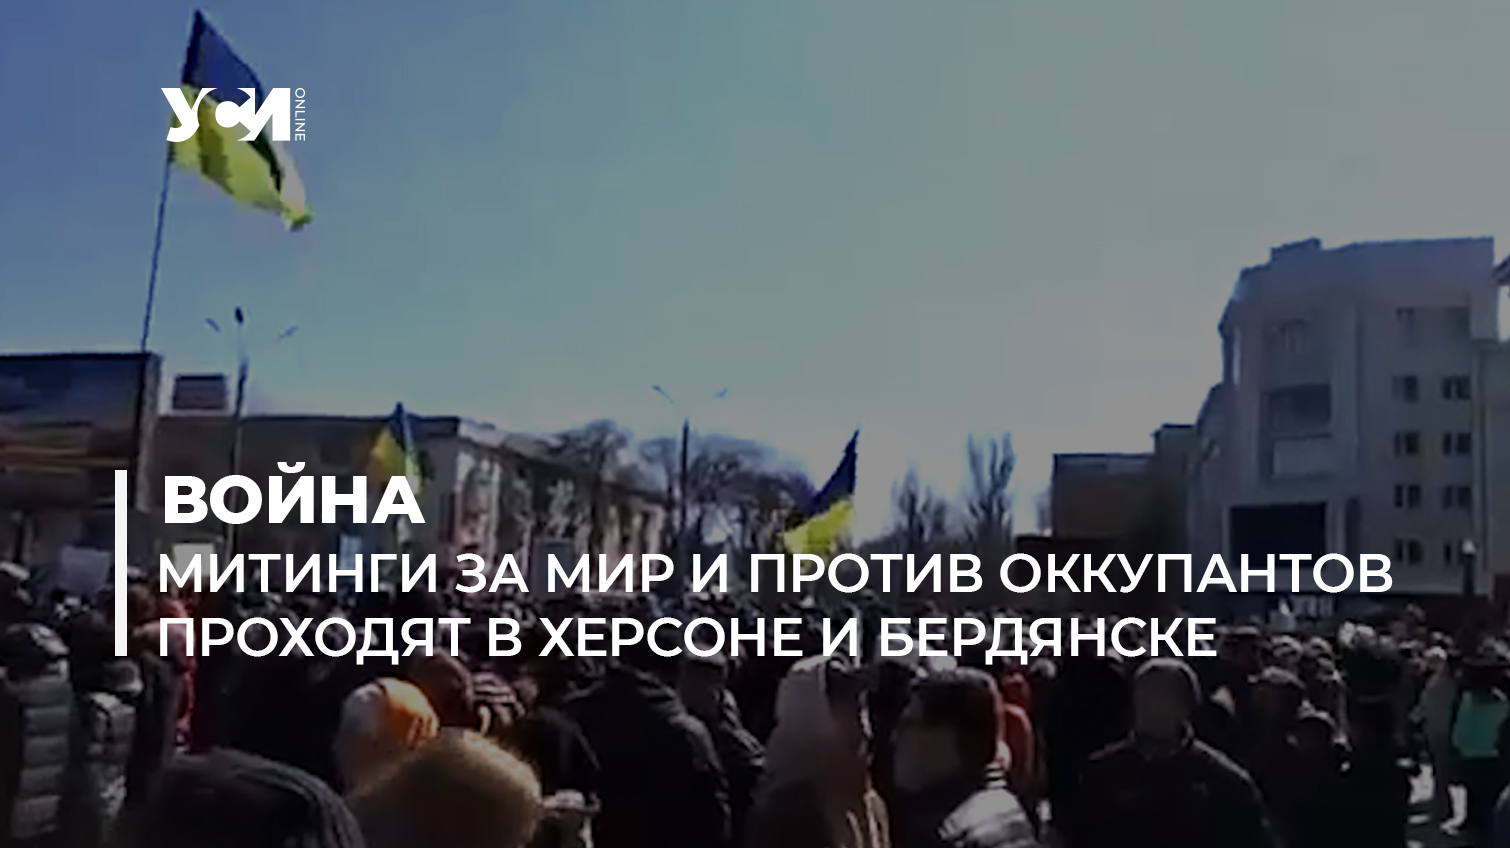 В Херсоне, Бердянске и других городах проходят митинги против оккупантов (видео) «фото»